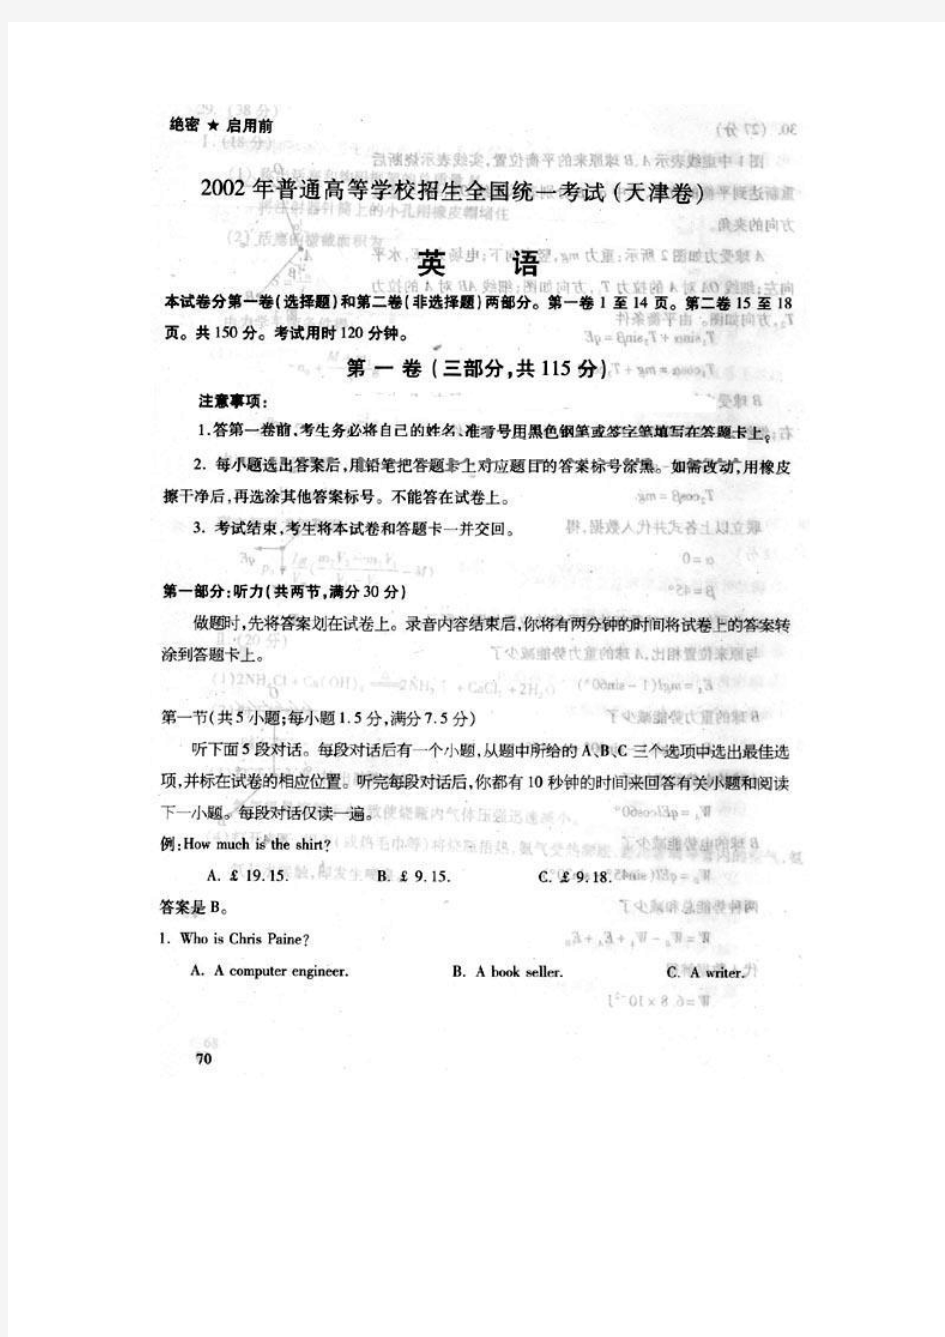 2002年高考试题——英语试卷(天津)(扫描版)